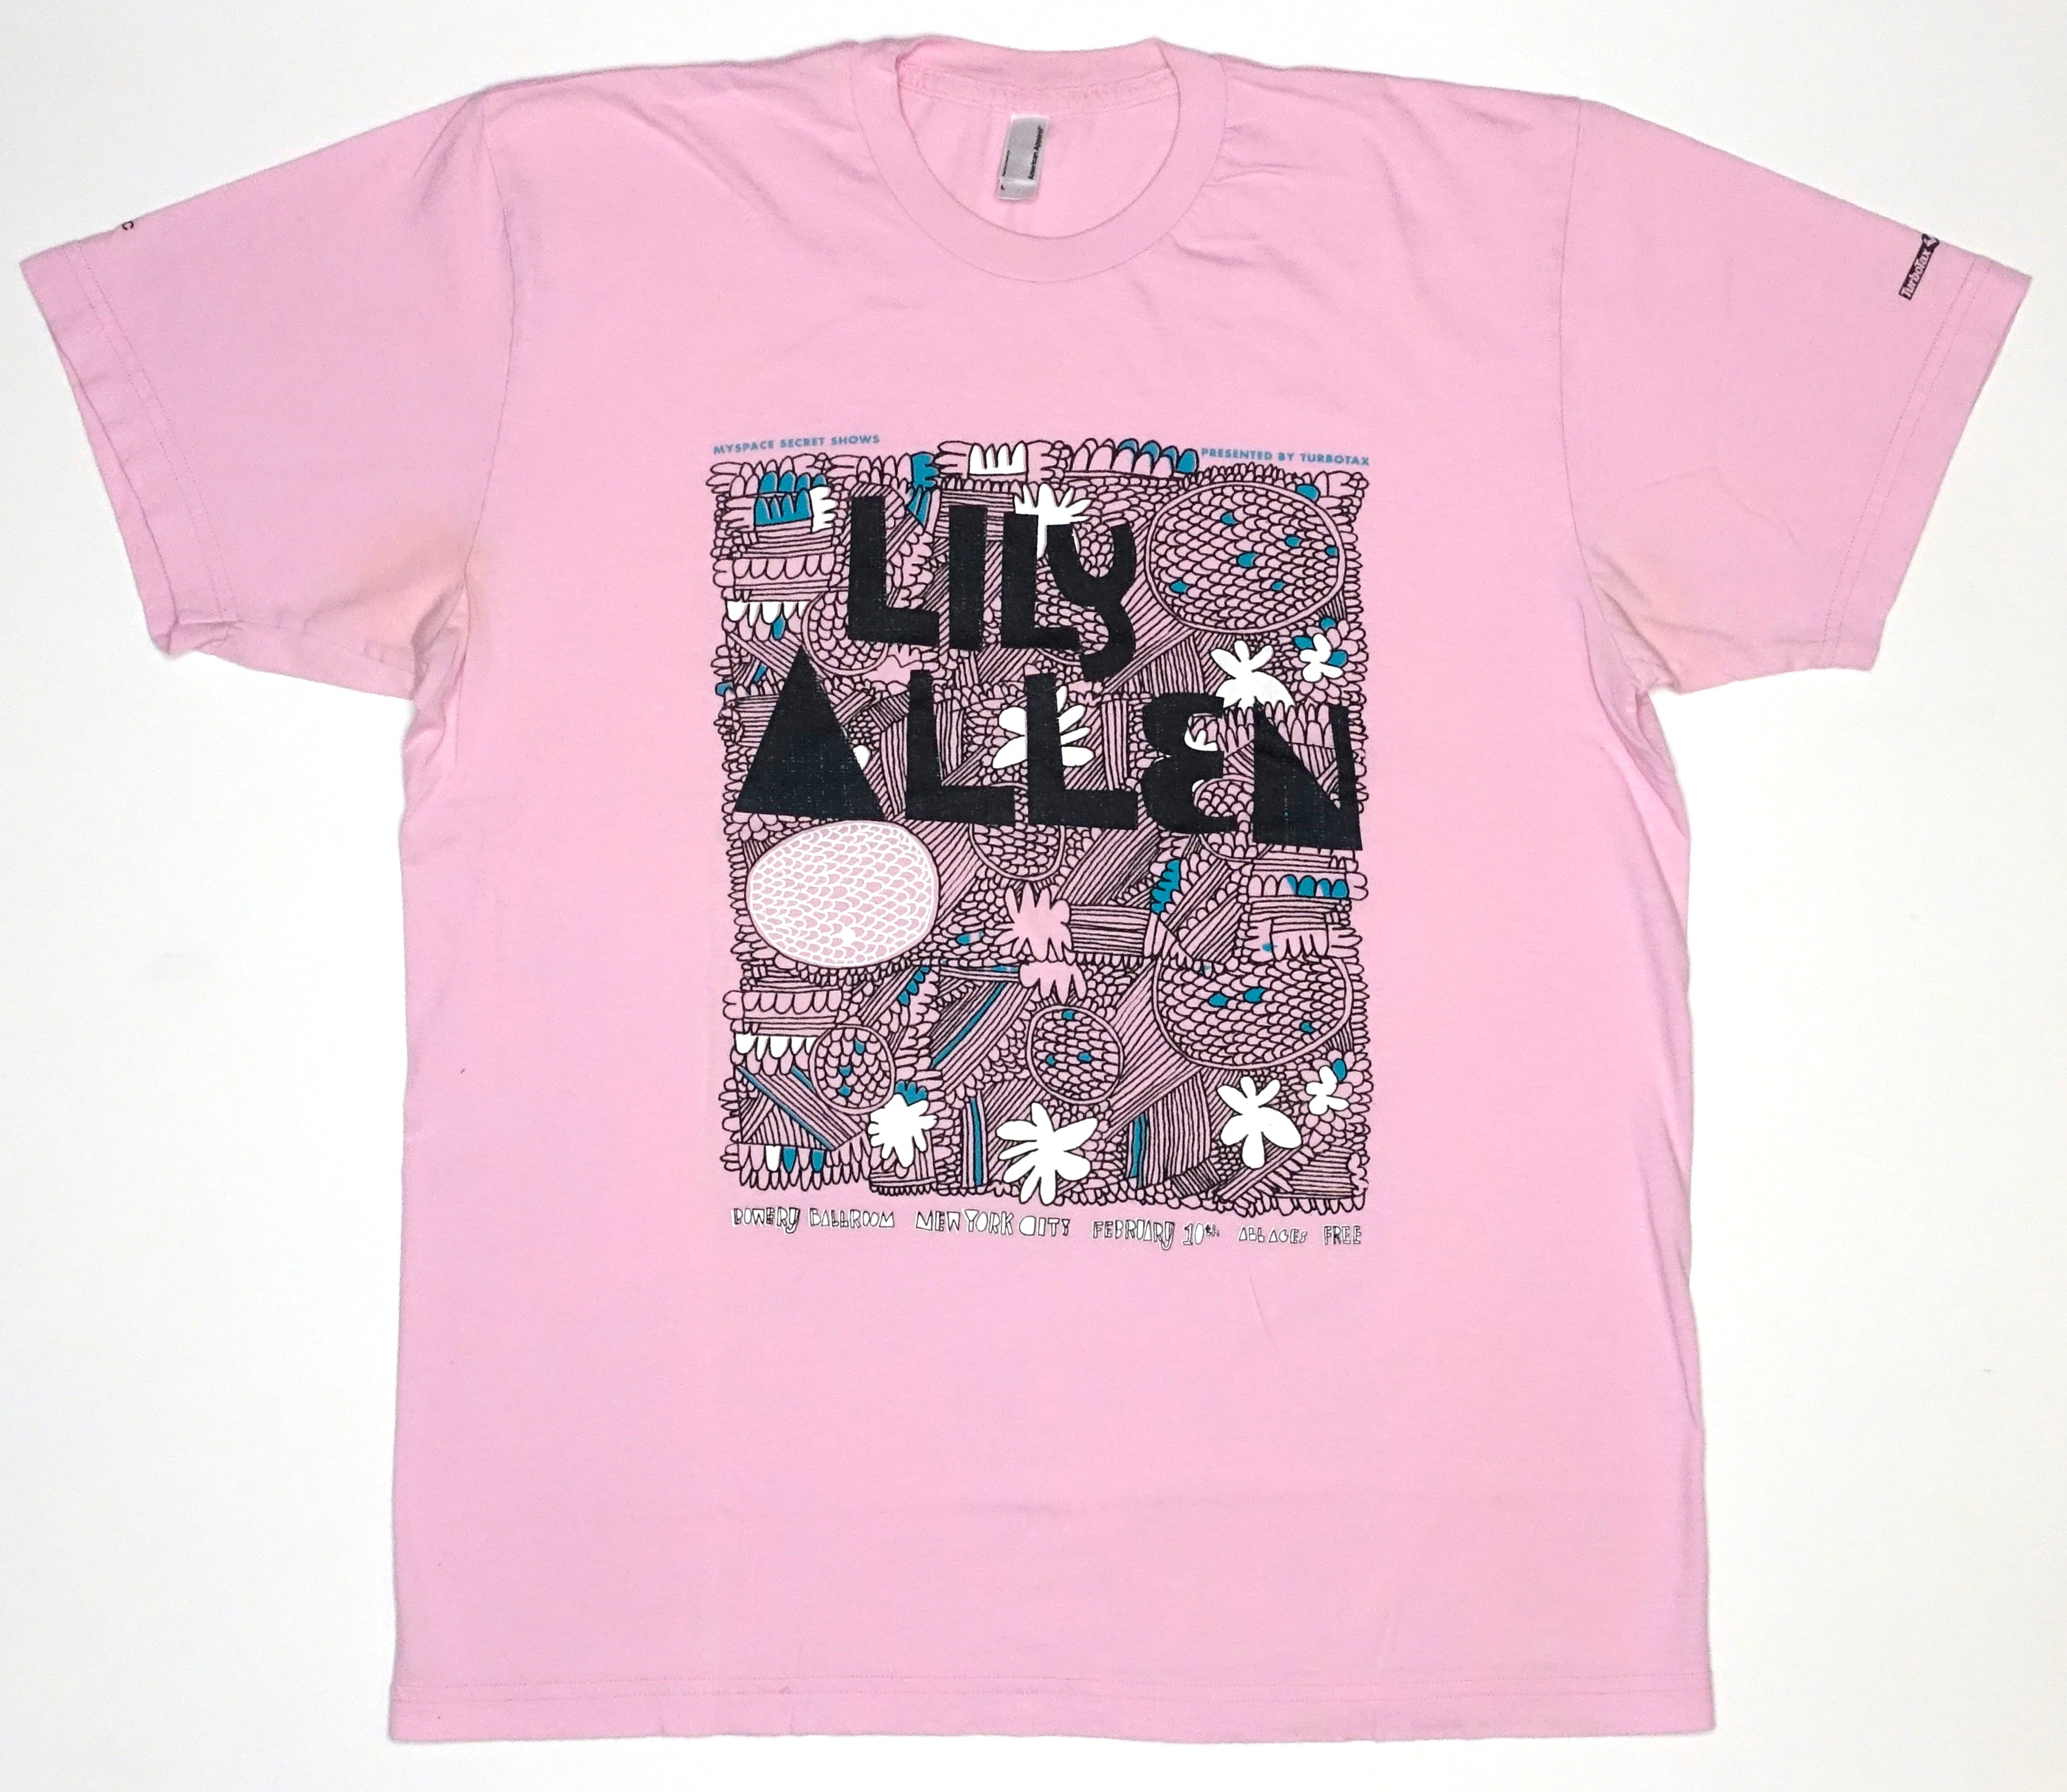 Lily Allen - MySpace Secret Show 2009 Promo Only Shirt Size Large